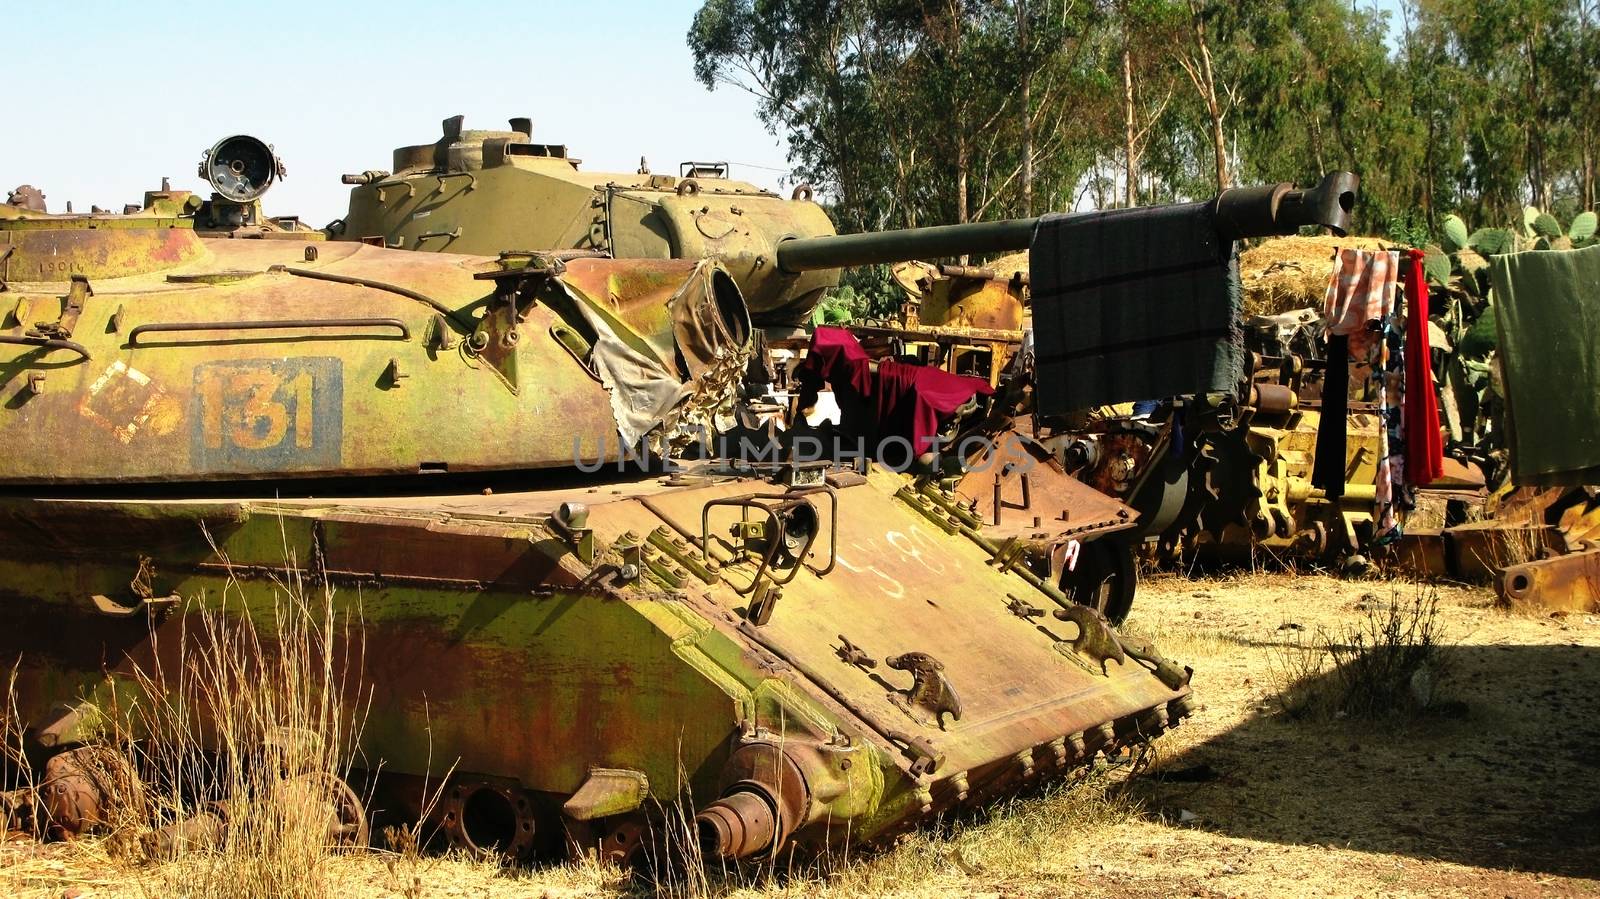 Tank Cemetery in the Asmara, Eritrea by homocosmicos